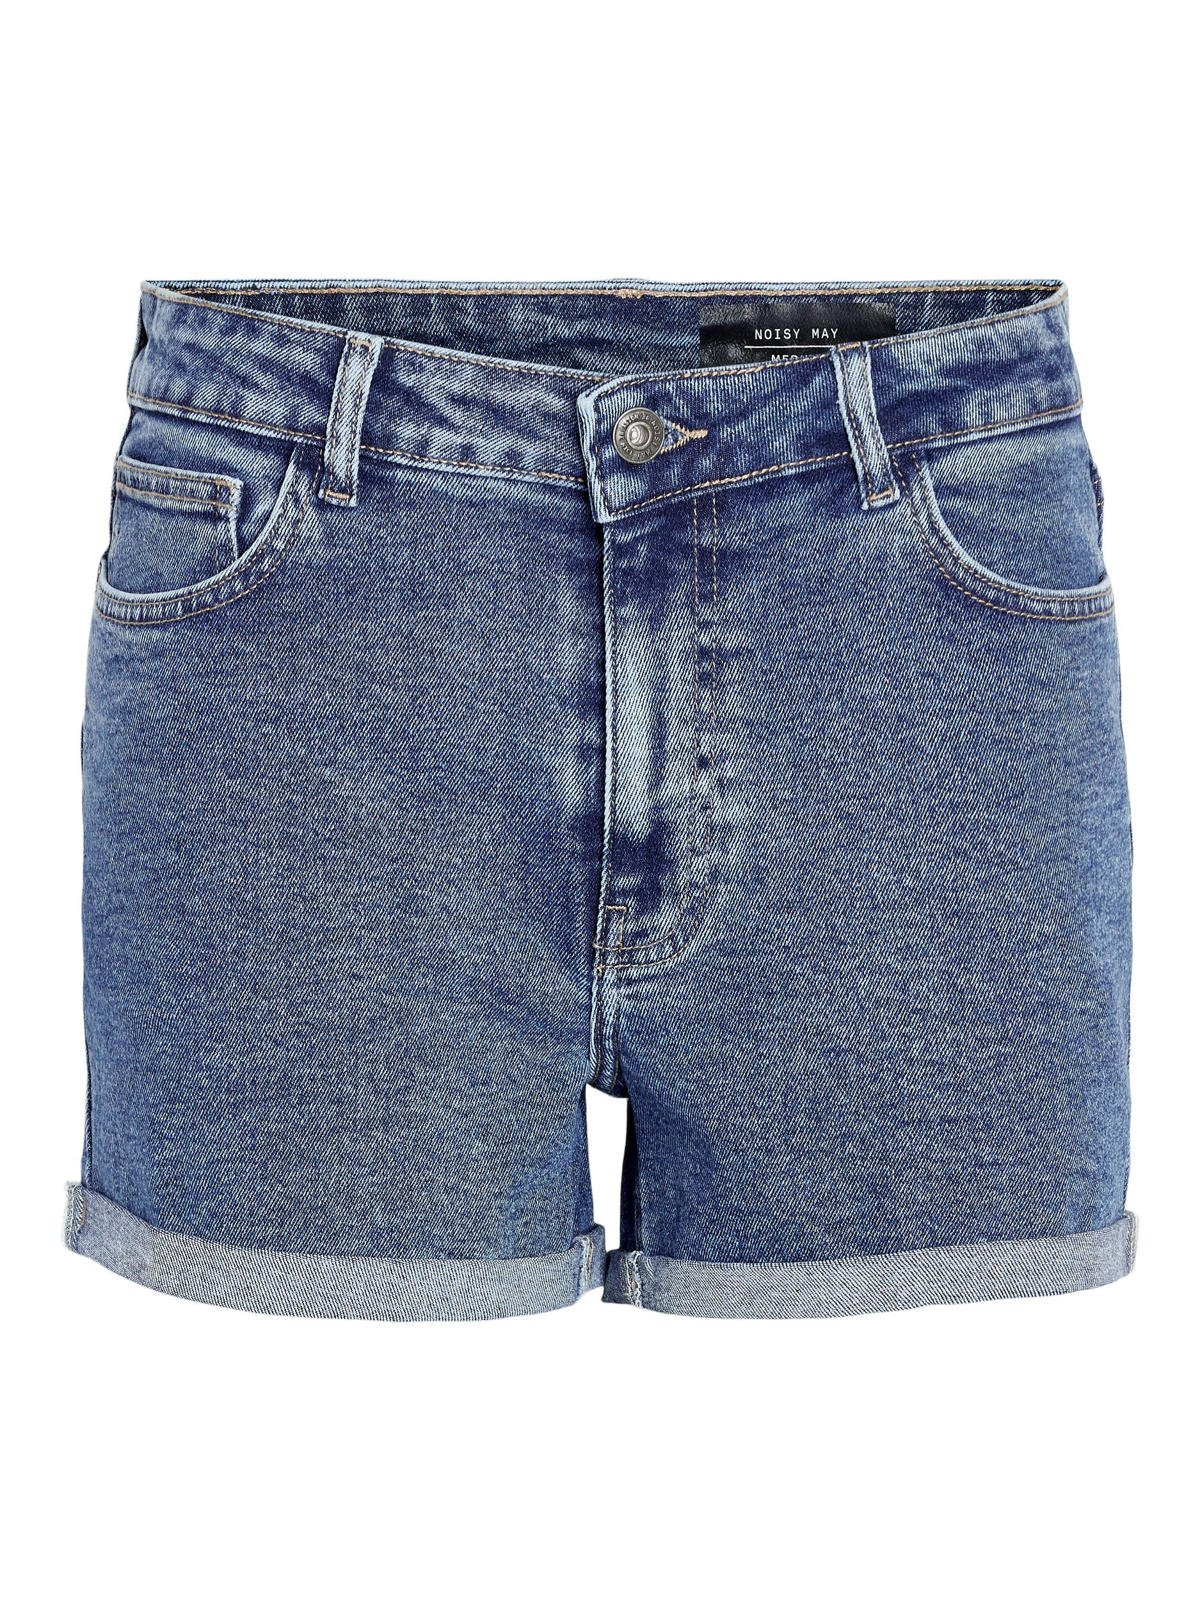 Denim Shorts In Medium Blue, Noisy May